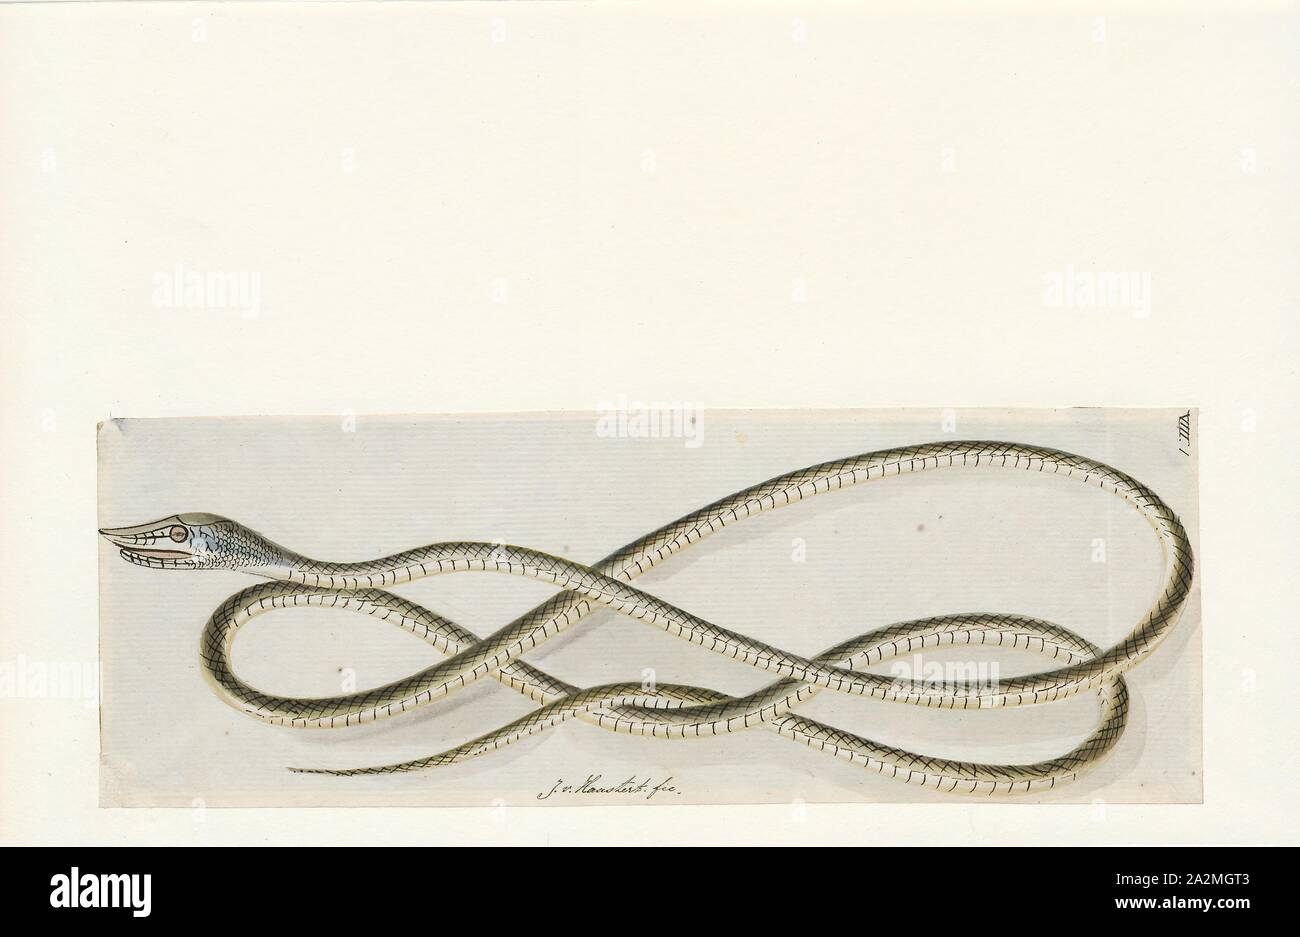 Dryophis Ahaetulla mycterizans, Imprimer, nasuta, également connu sous le nom de serpent de vigne communes et Whip bec long serpent, est un mince serpent vert trouvés en Inde, Sri Lanka, Bangladesh, Birmanie, Thaïlande, Cambodge et Vietnam, 1753-1834. Banque D'Images